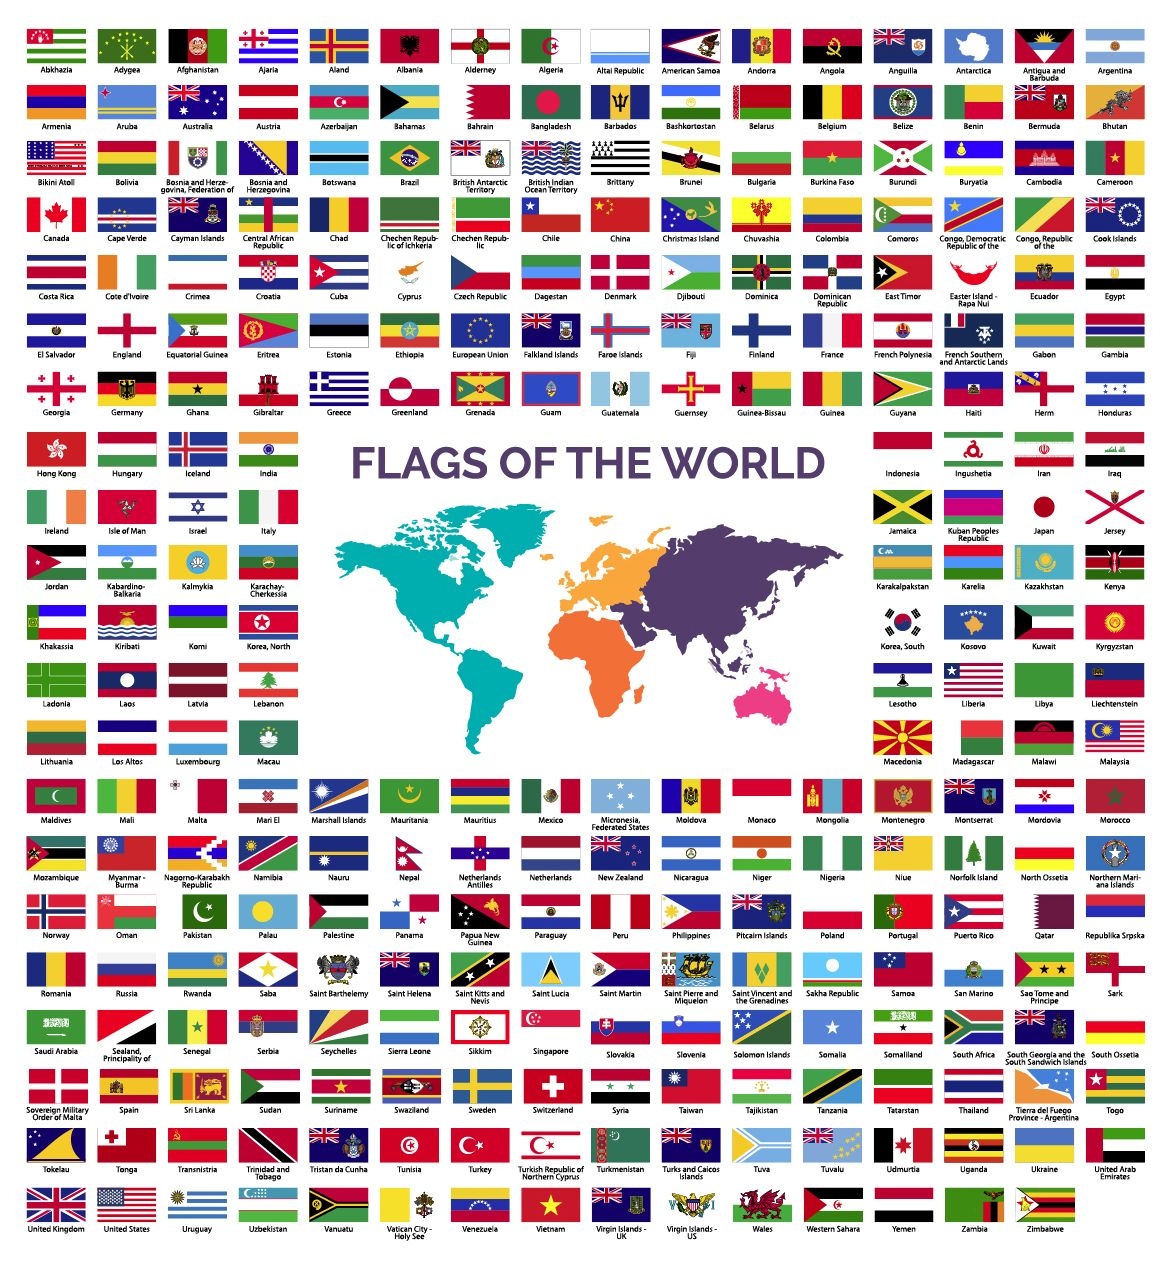 Bandeiras Do Mundo E Do Mapa No Fundo Branco Ilustracao Do Vetor Images